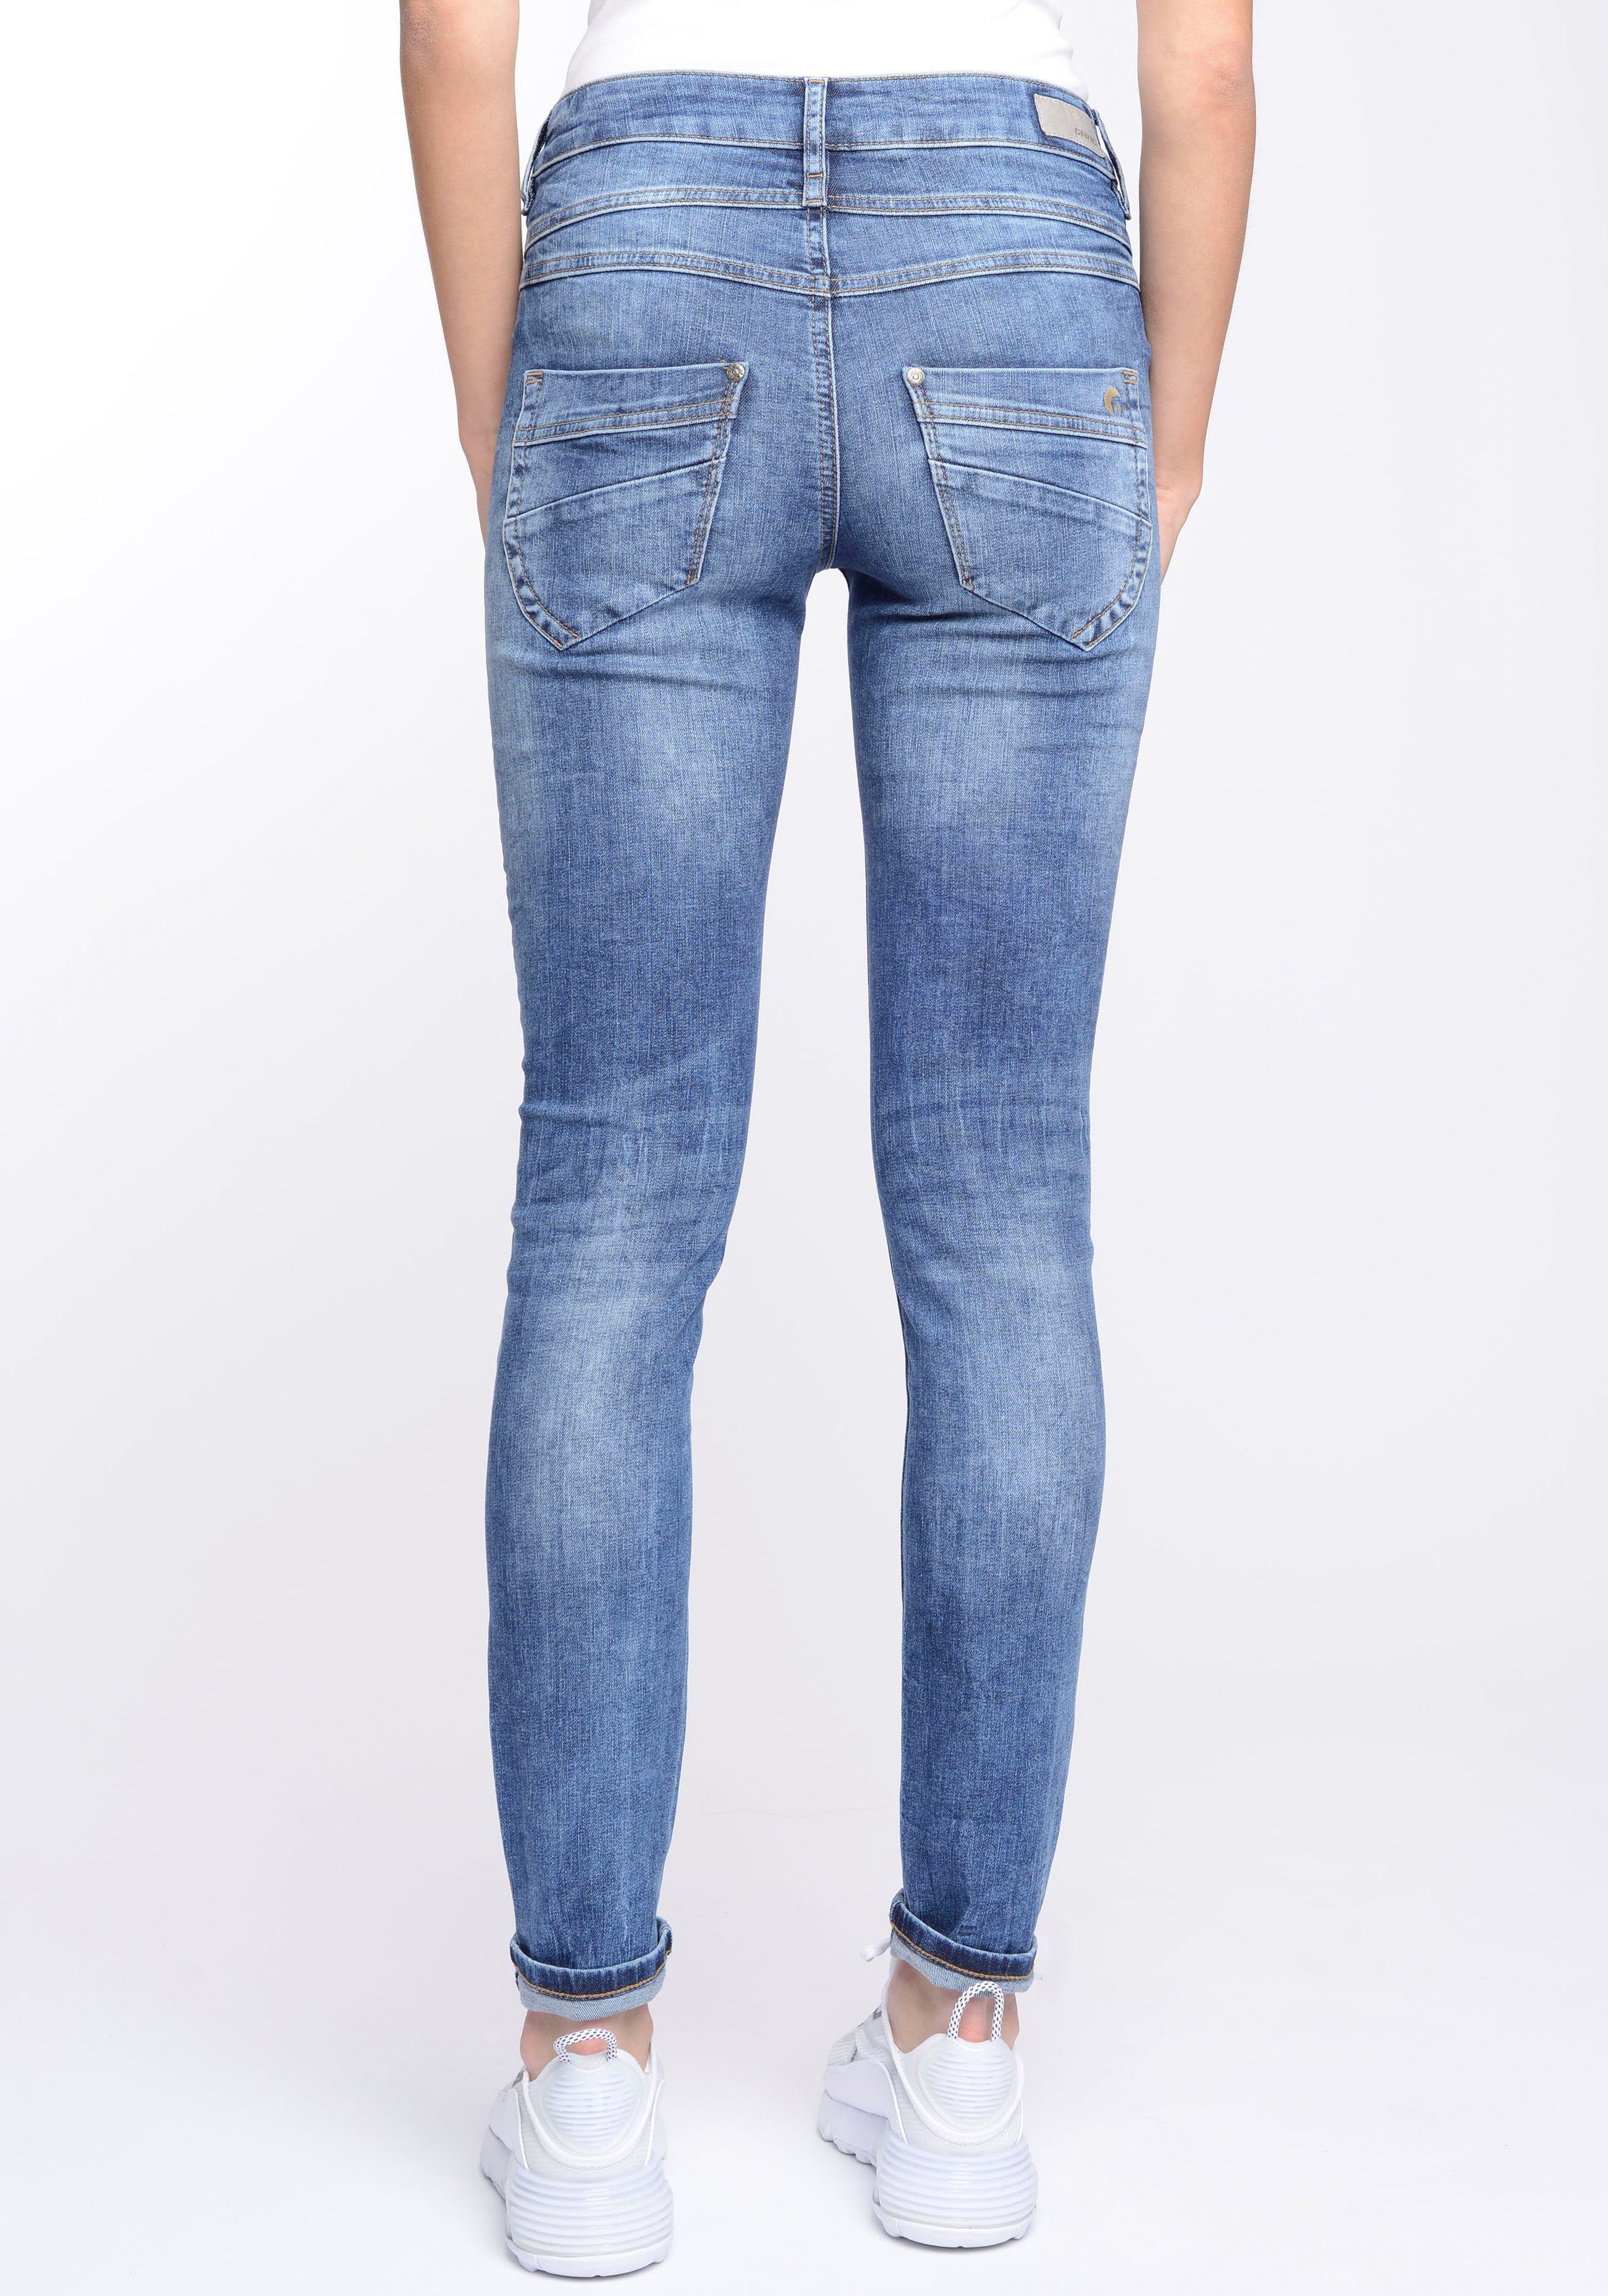 GANG Skinny-fit-Jeans 94MORA mit (mid blue) 3-Knopf-Verschluss und Midblue vorne Wash Passe